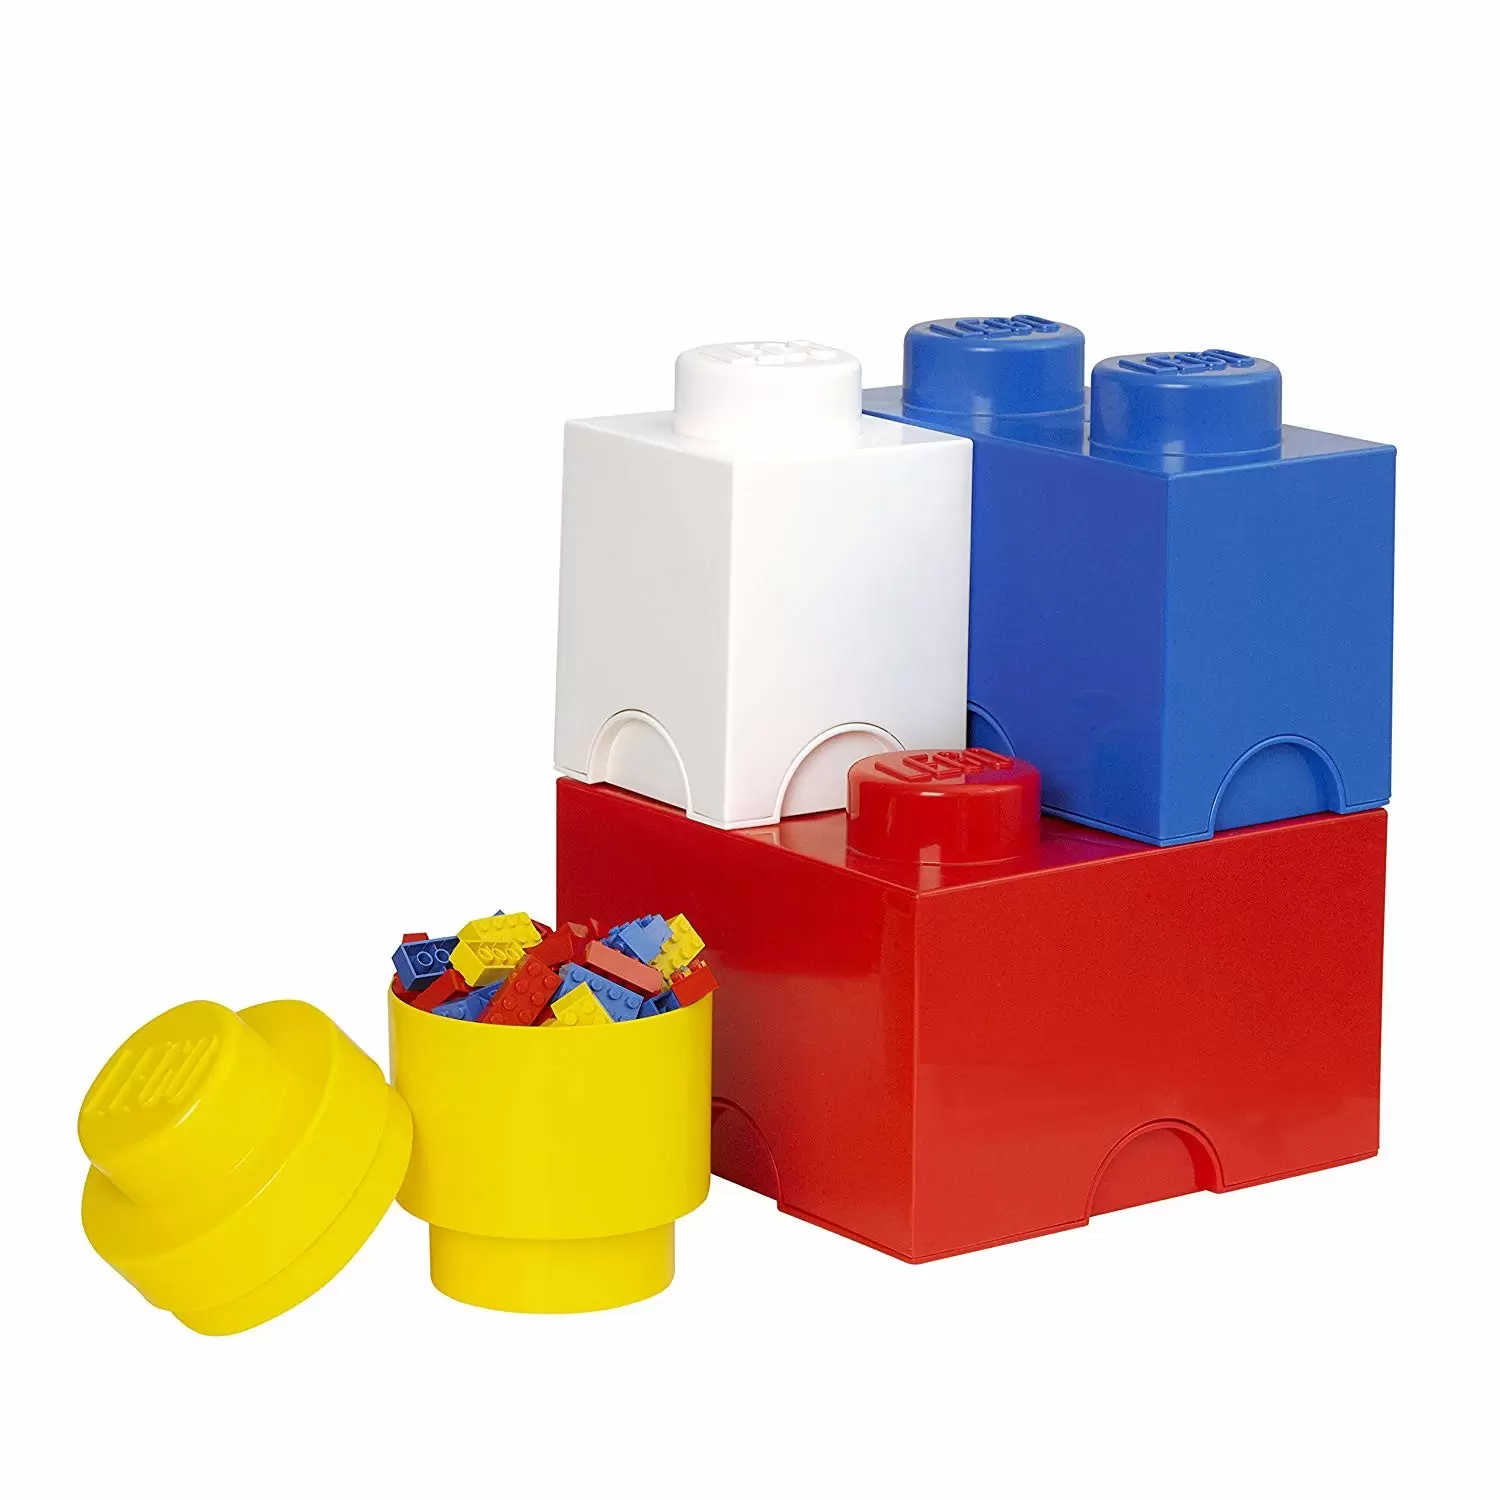 Rangements LEGO - 4 briques Empilable - Bleu, rouge, jaune et blanc